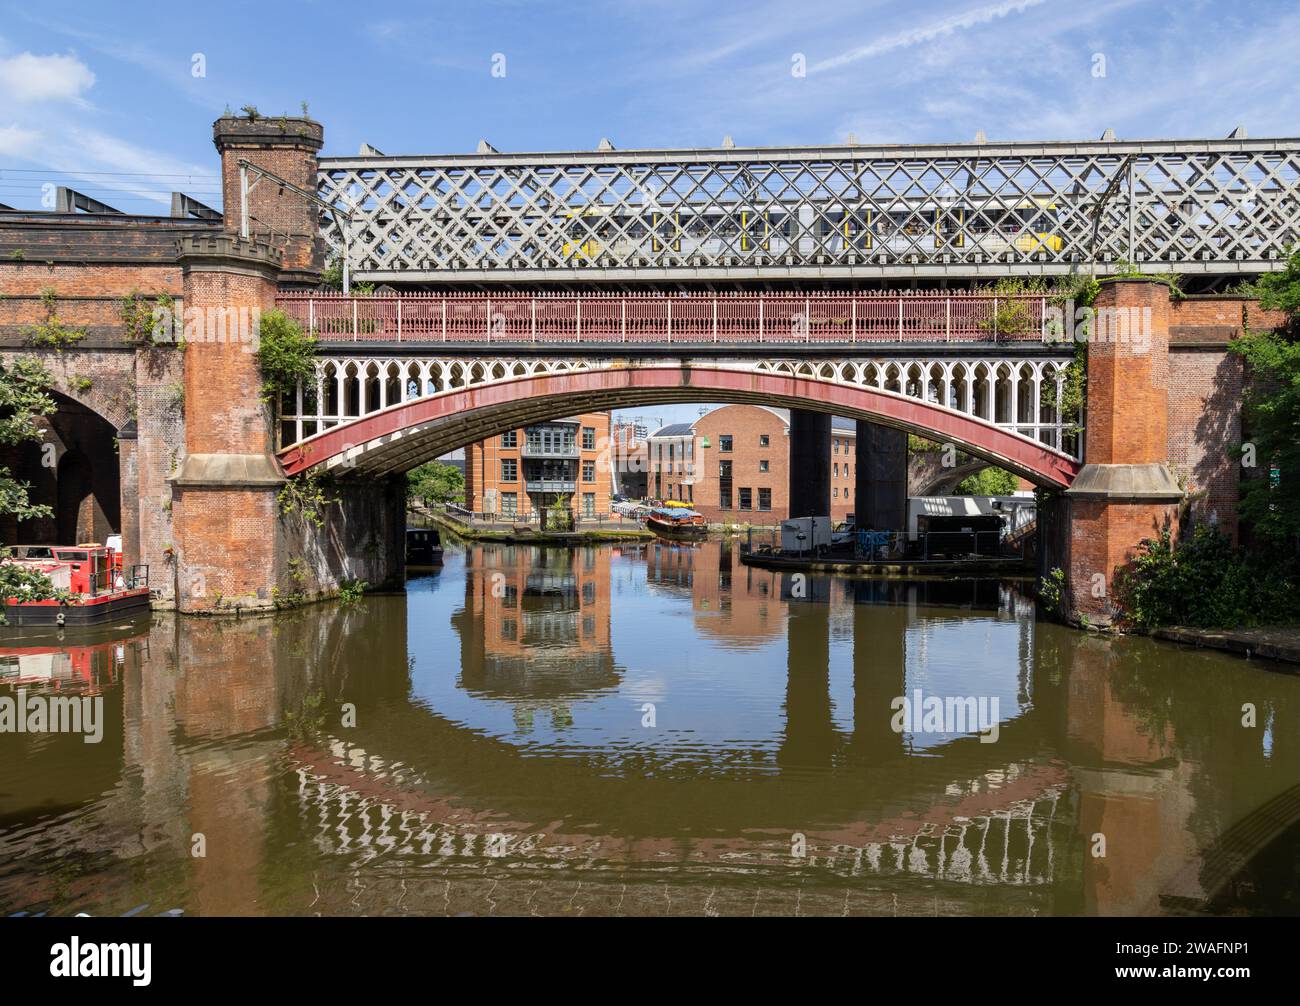 Un train traversant un viaduc ferroviaire victorien sur le canal Bridgewater, Manchester. Pont ferroviaire victorien reflétant dans le canal. Banque D'Images